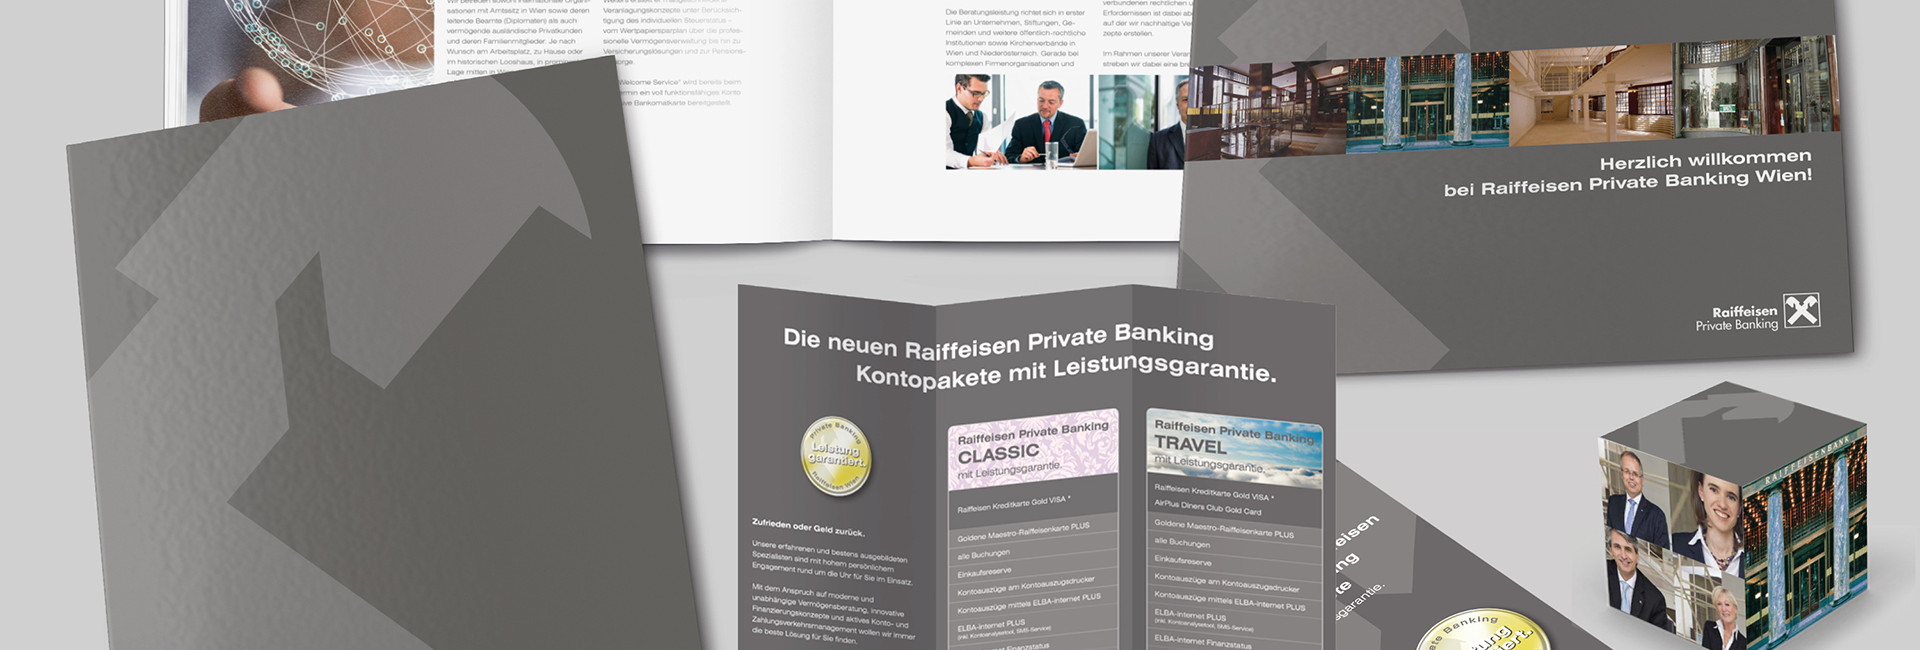 Raiffeisen Private Banking Wien